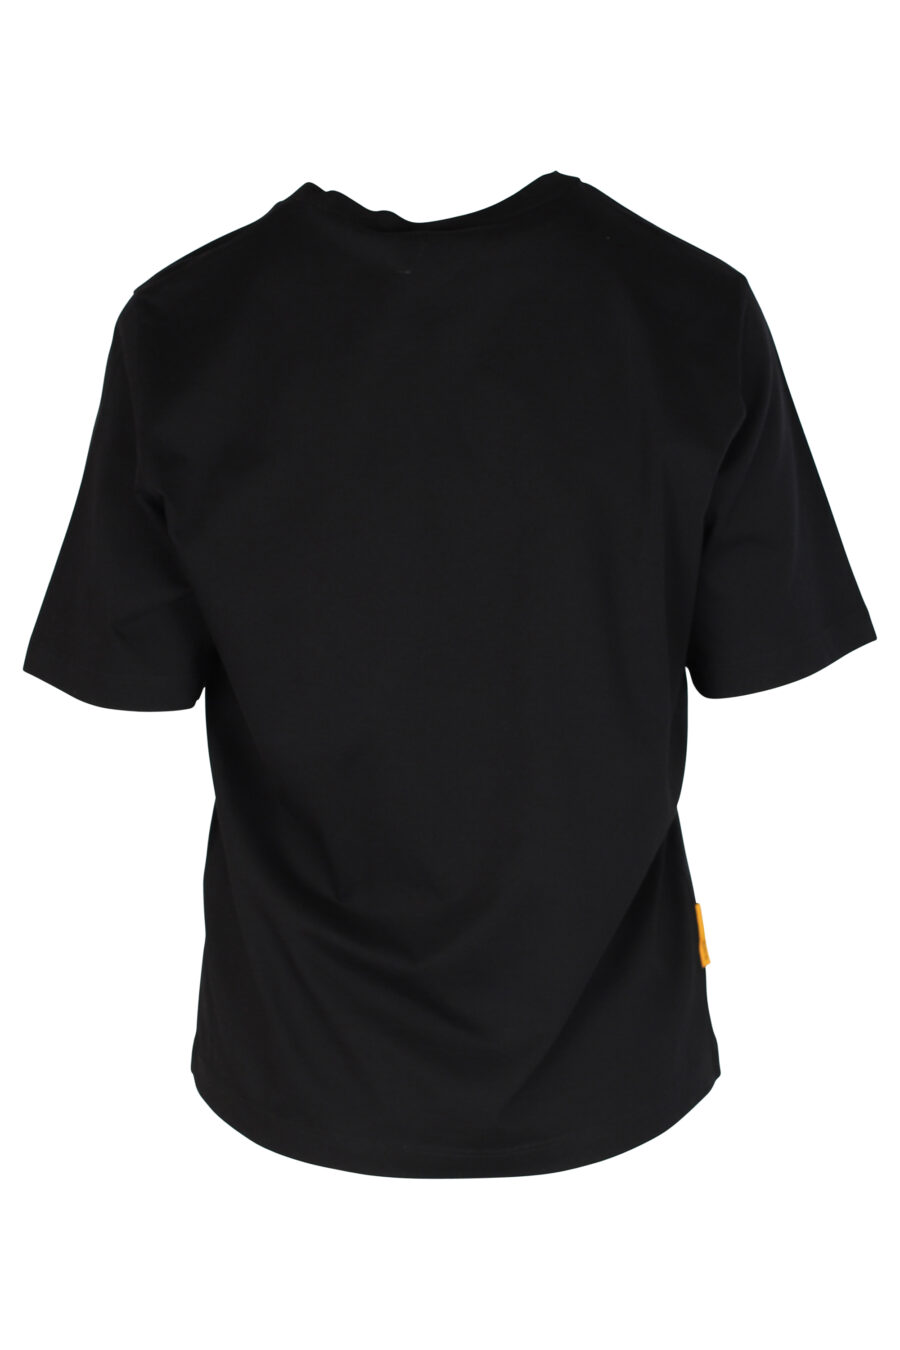 T-shirt noir avec logo "Pac-man" - 8054148185558 2